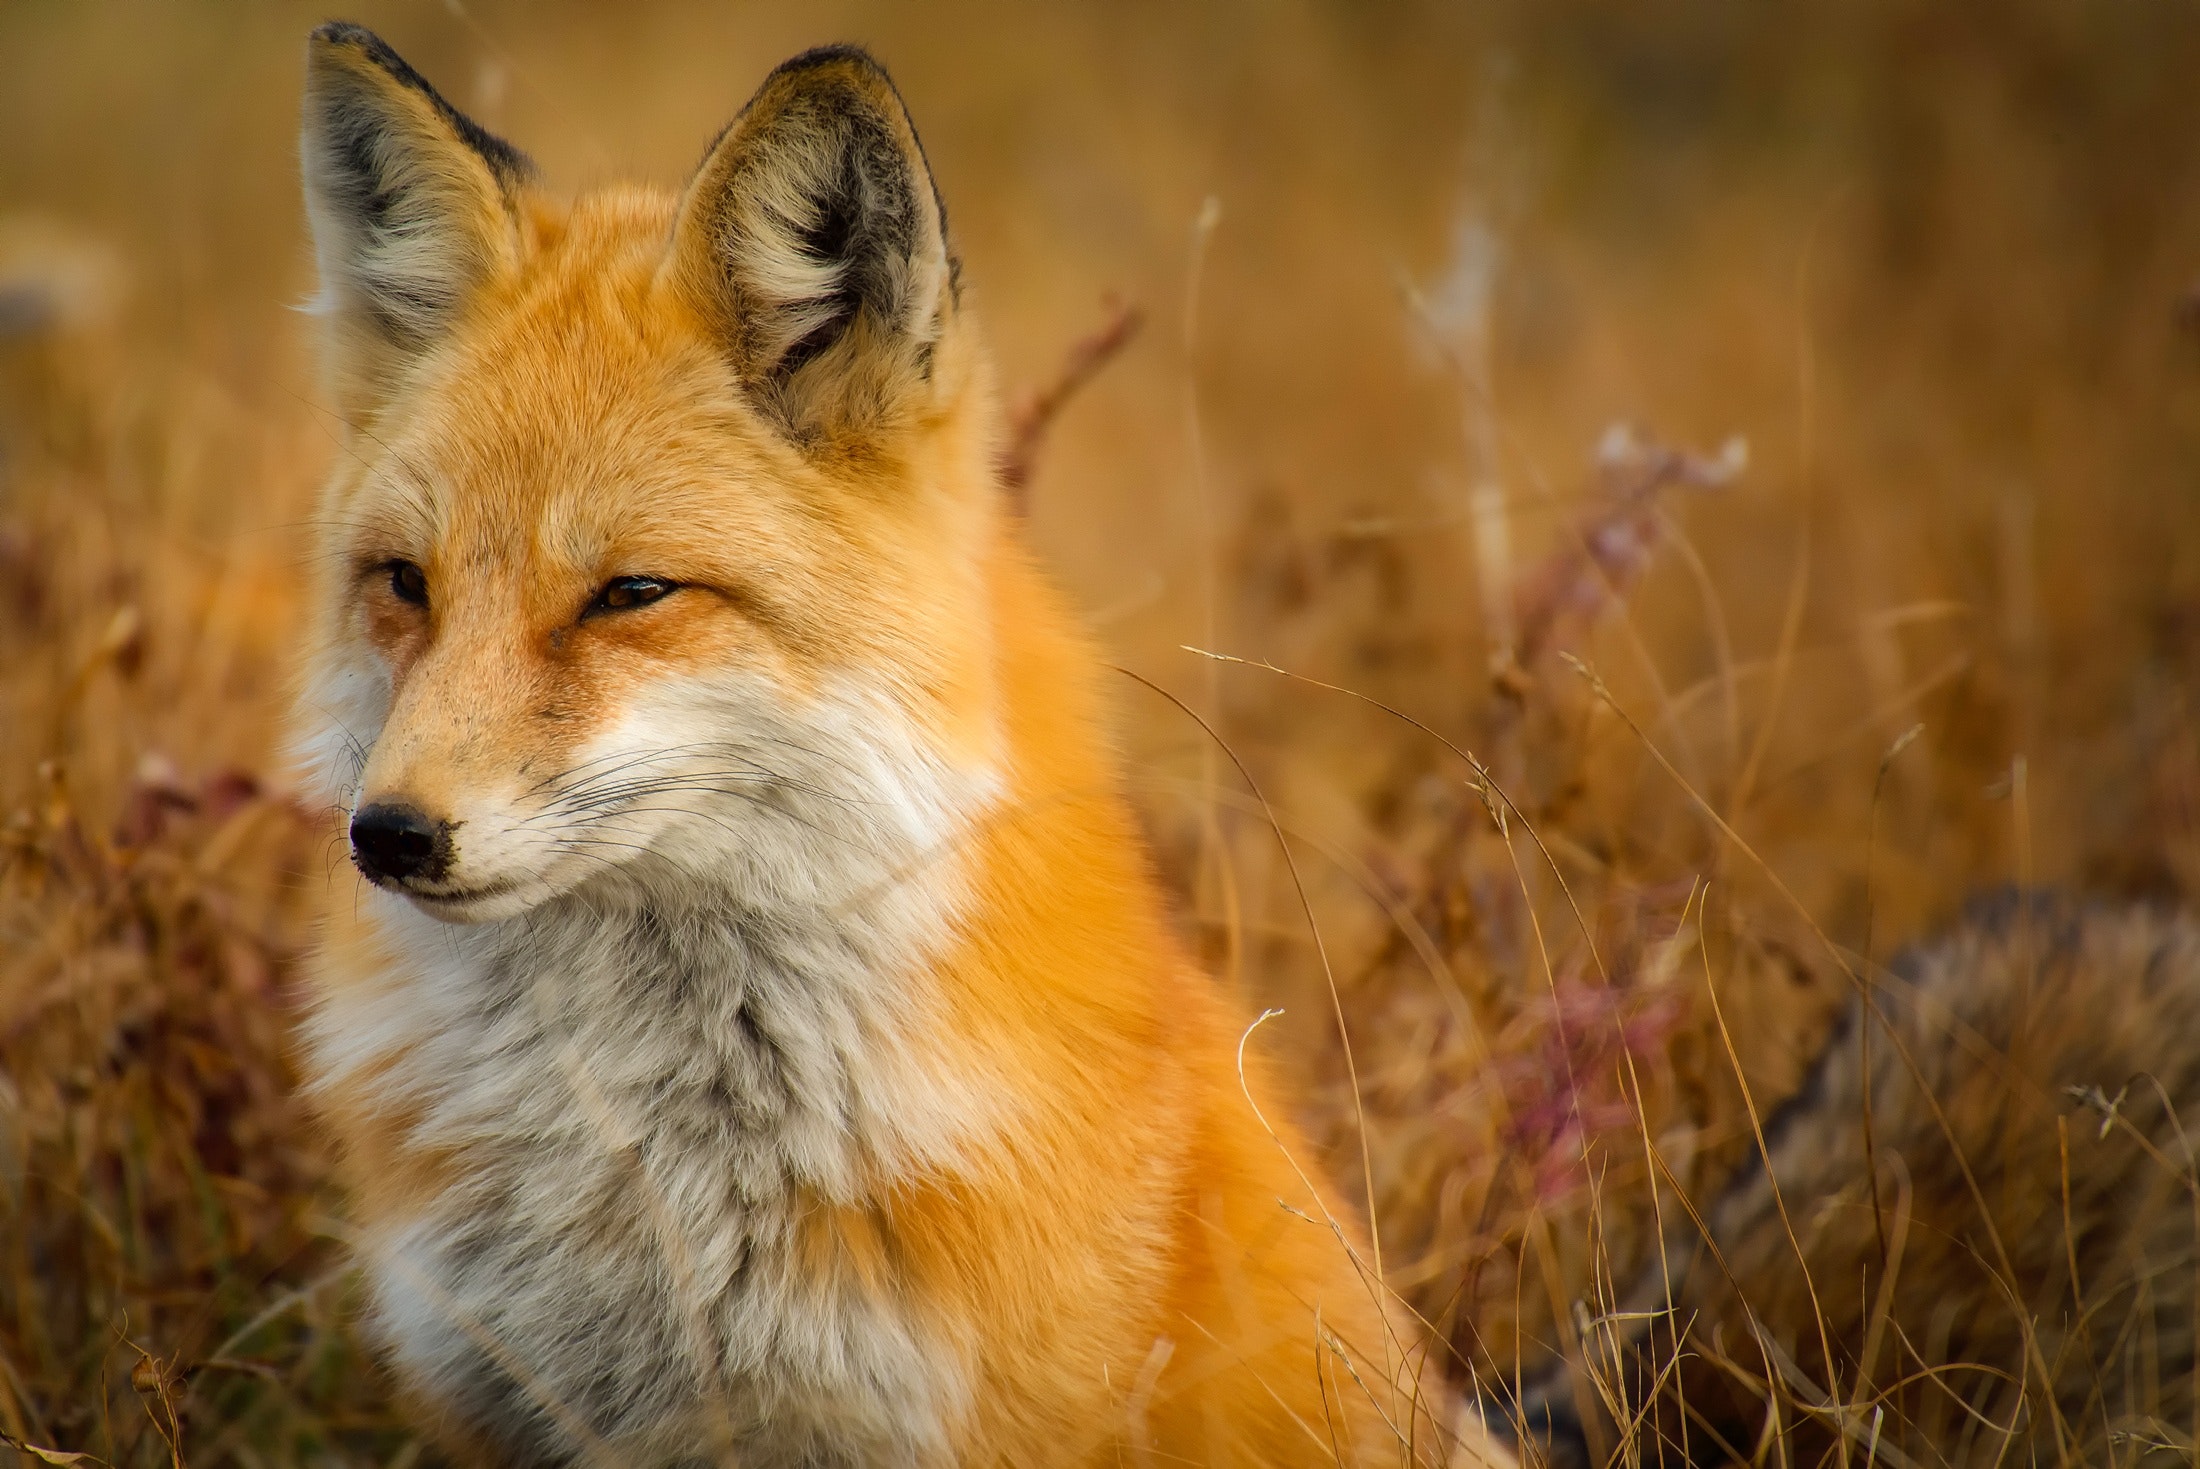 喬叟形容狐狸的橙色毛皮是「介於黃色與紅色之間」。